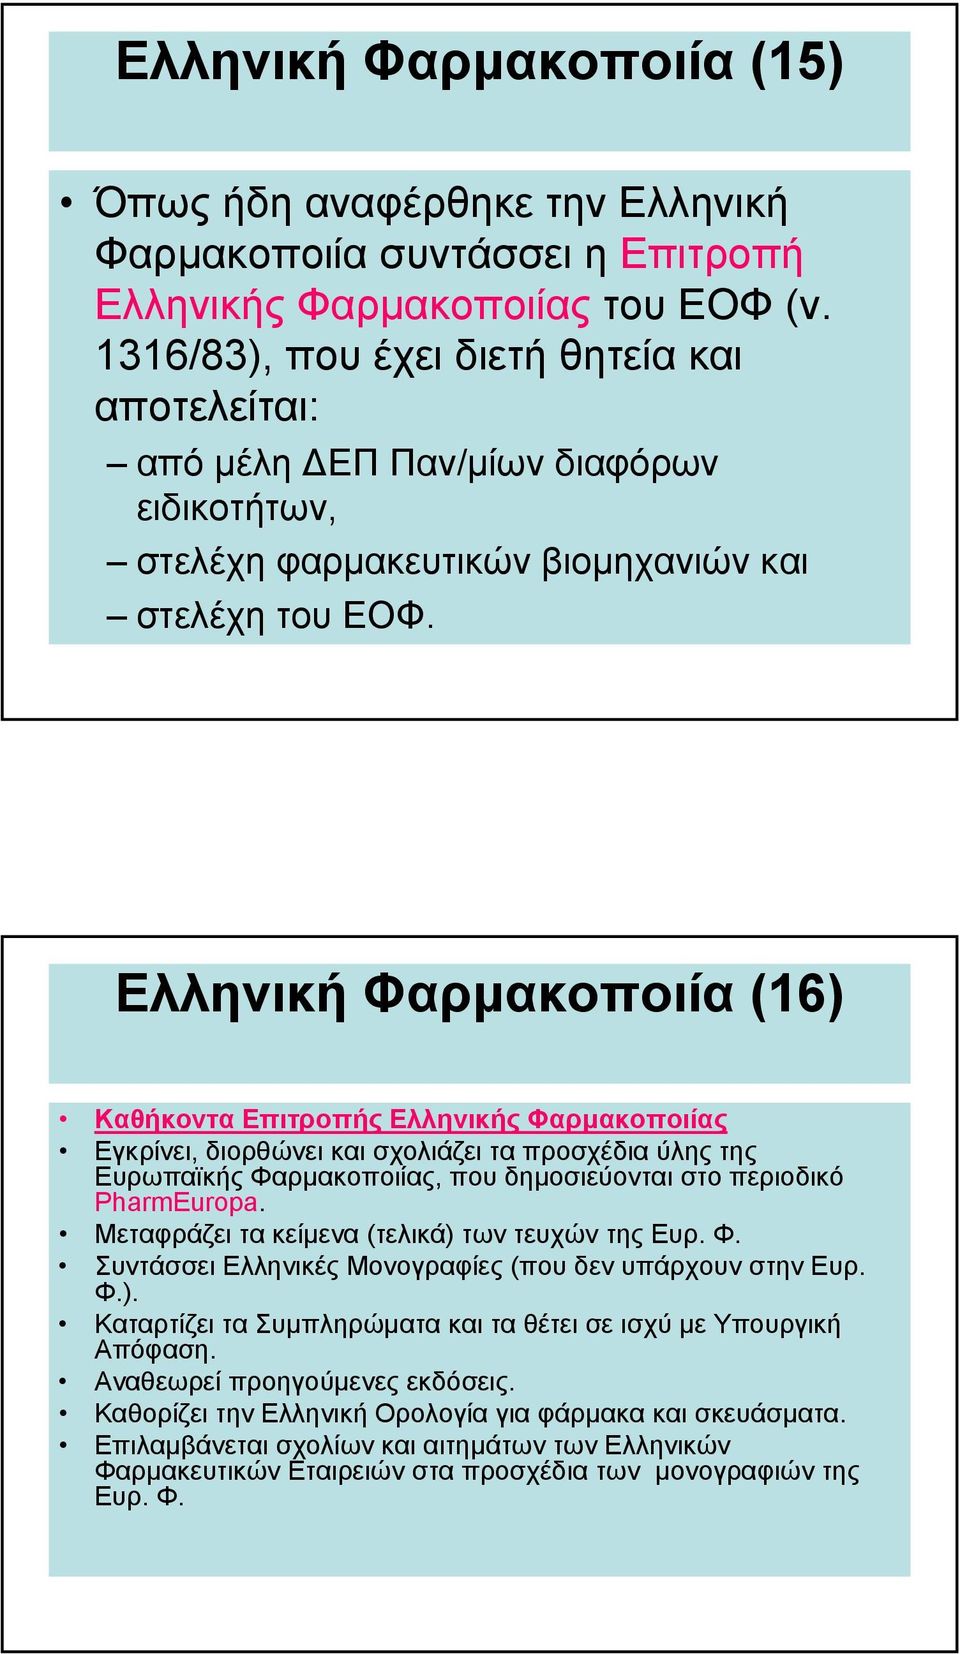 Ελληνική Φαρµακοποιία (16) Καθήκοντα Επιτροπής Ελληνικής Φαρµακοποιίας Εγκρίνει, διορθώνει και σχολιάζει τα προσχέδια ύλης της Ευρωπαϊκής Φαρµακοποιίας, που δηµοσιεύονται στο περιοδικό PharmEuropa.